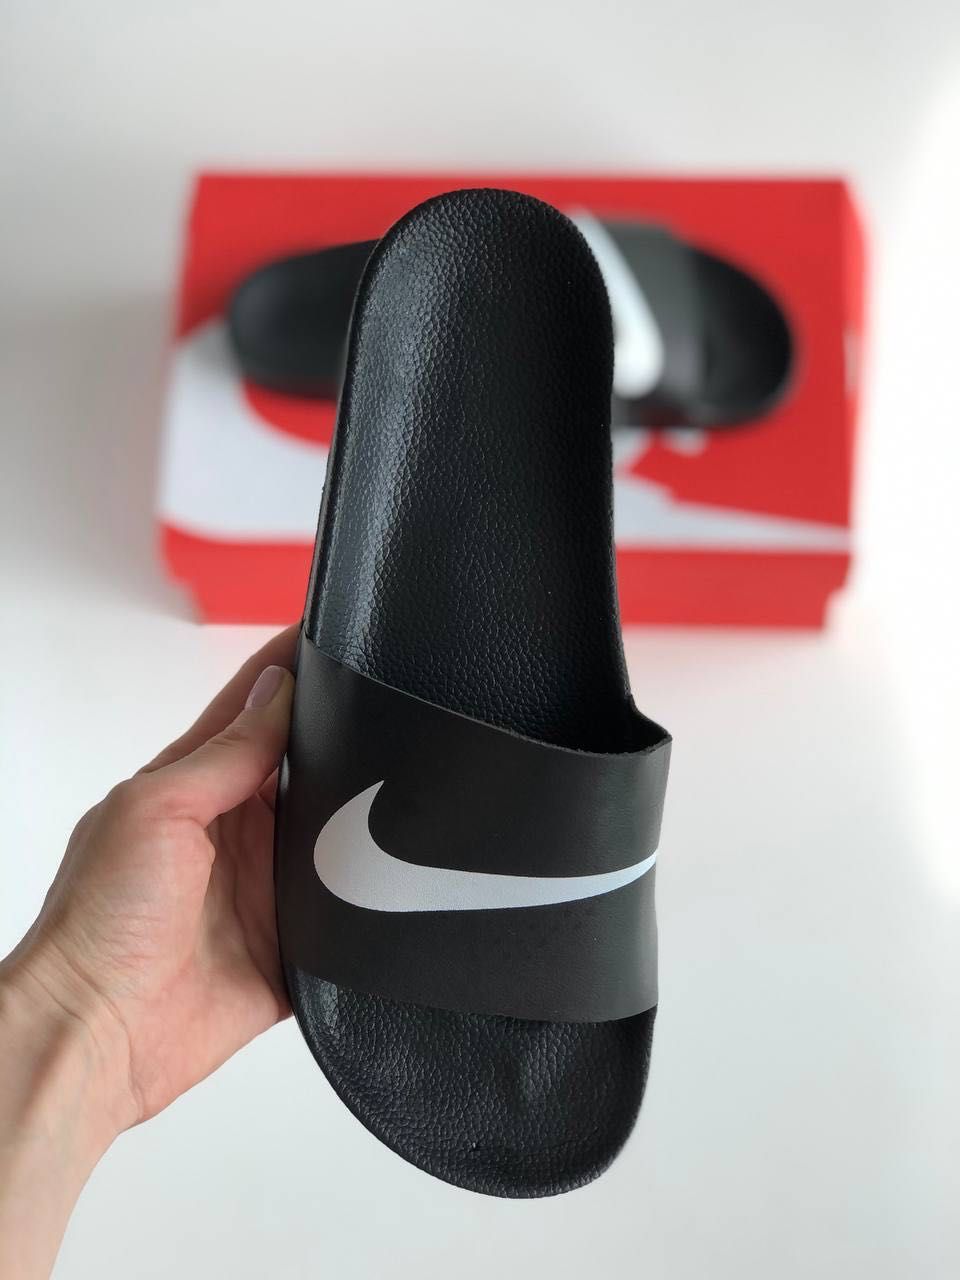 Мужские тапочки, сланцы, шлепки Nike black&white. Размеры 40-45